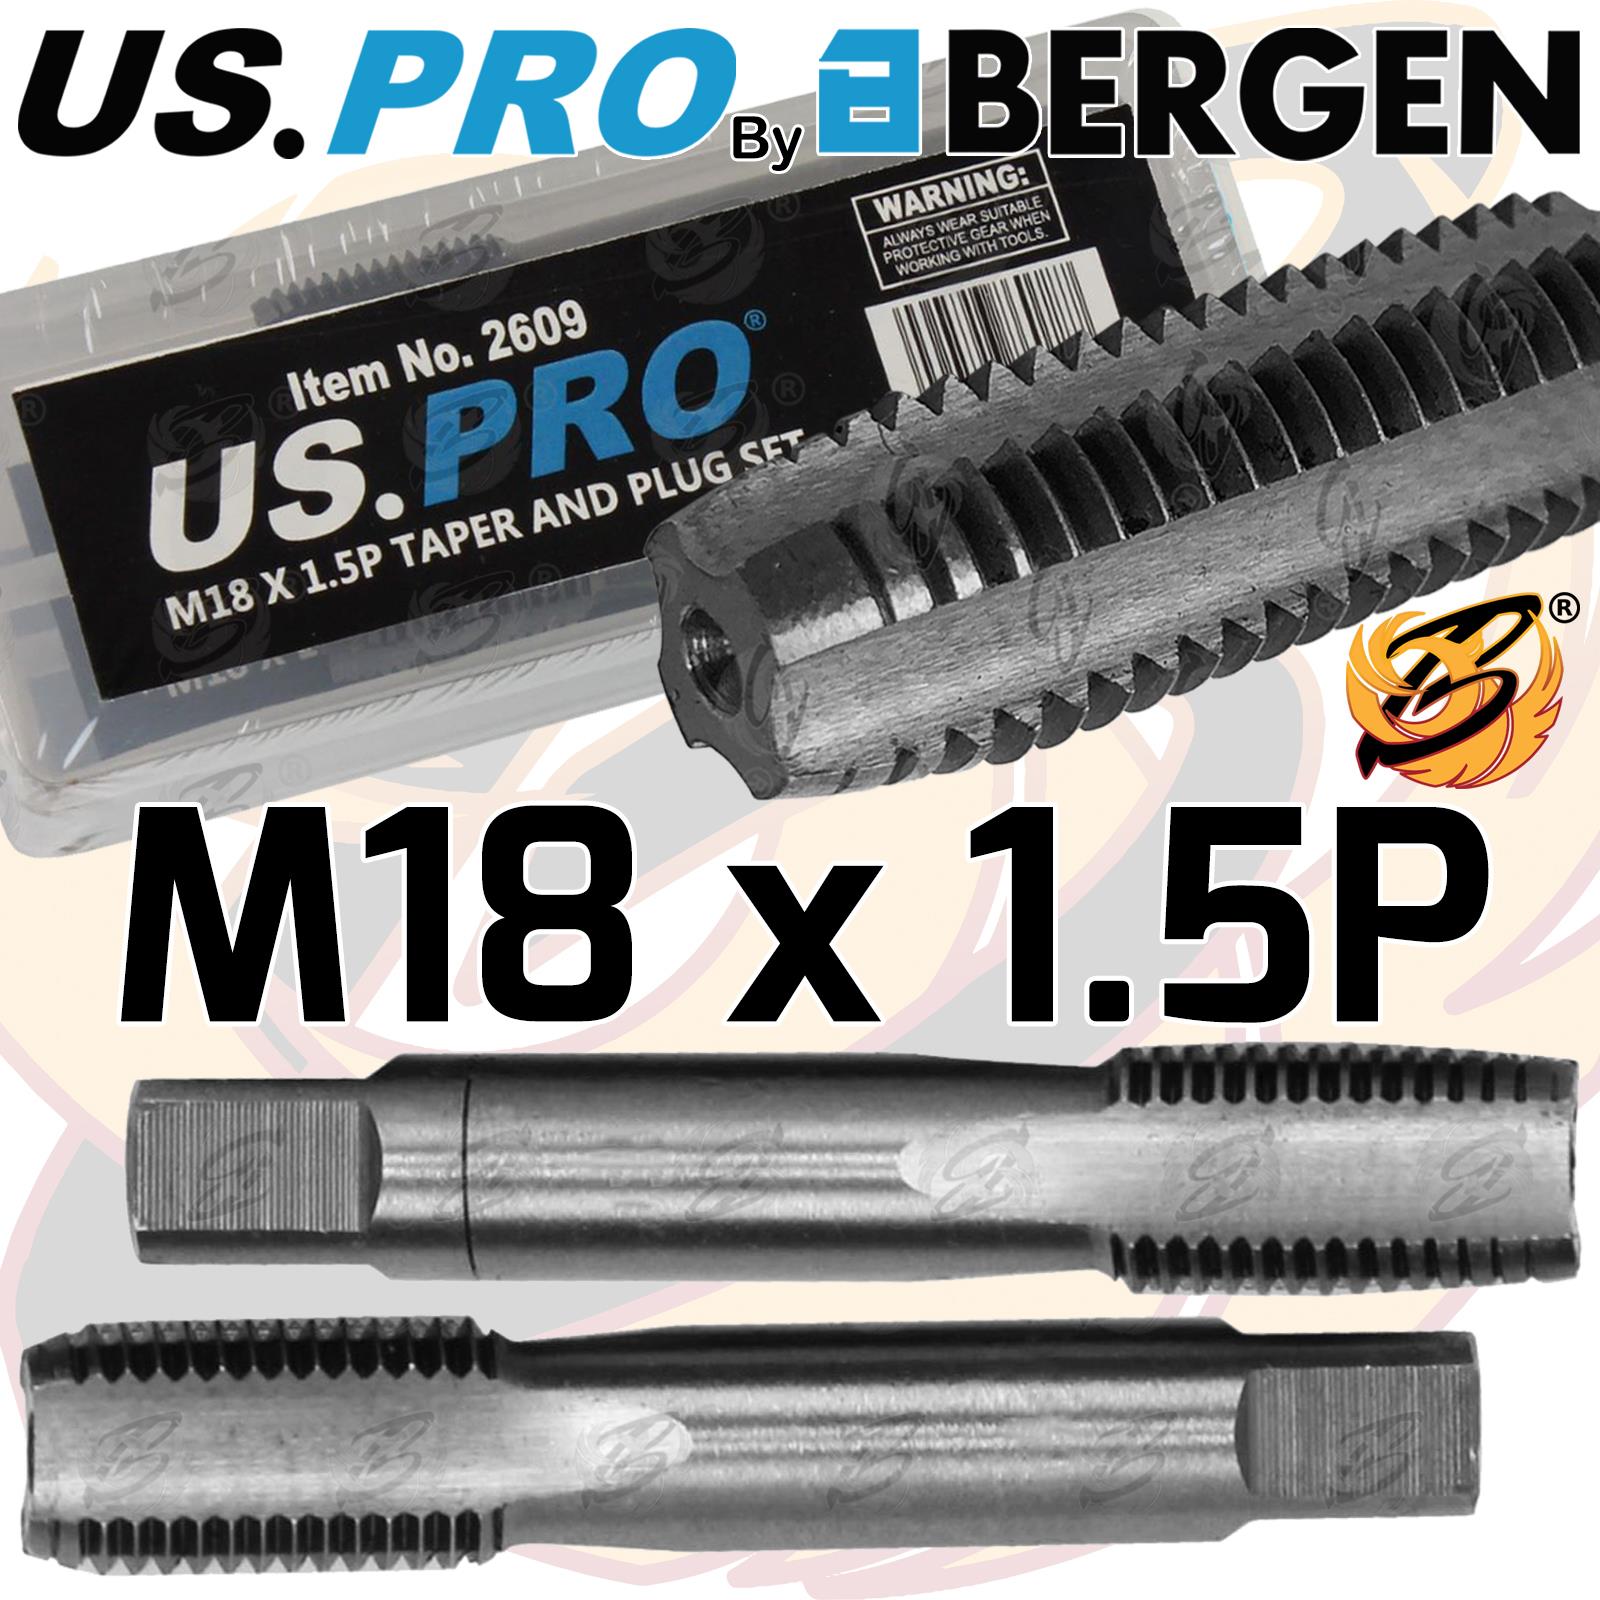 US PRO M18 x 1.5P TAPER & PLUG SET